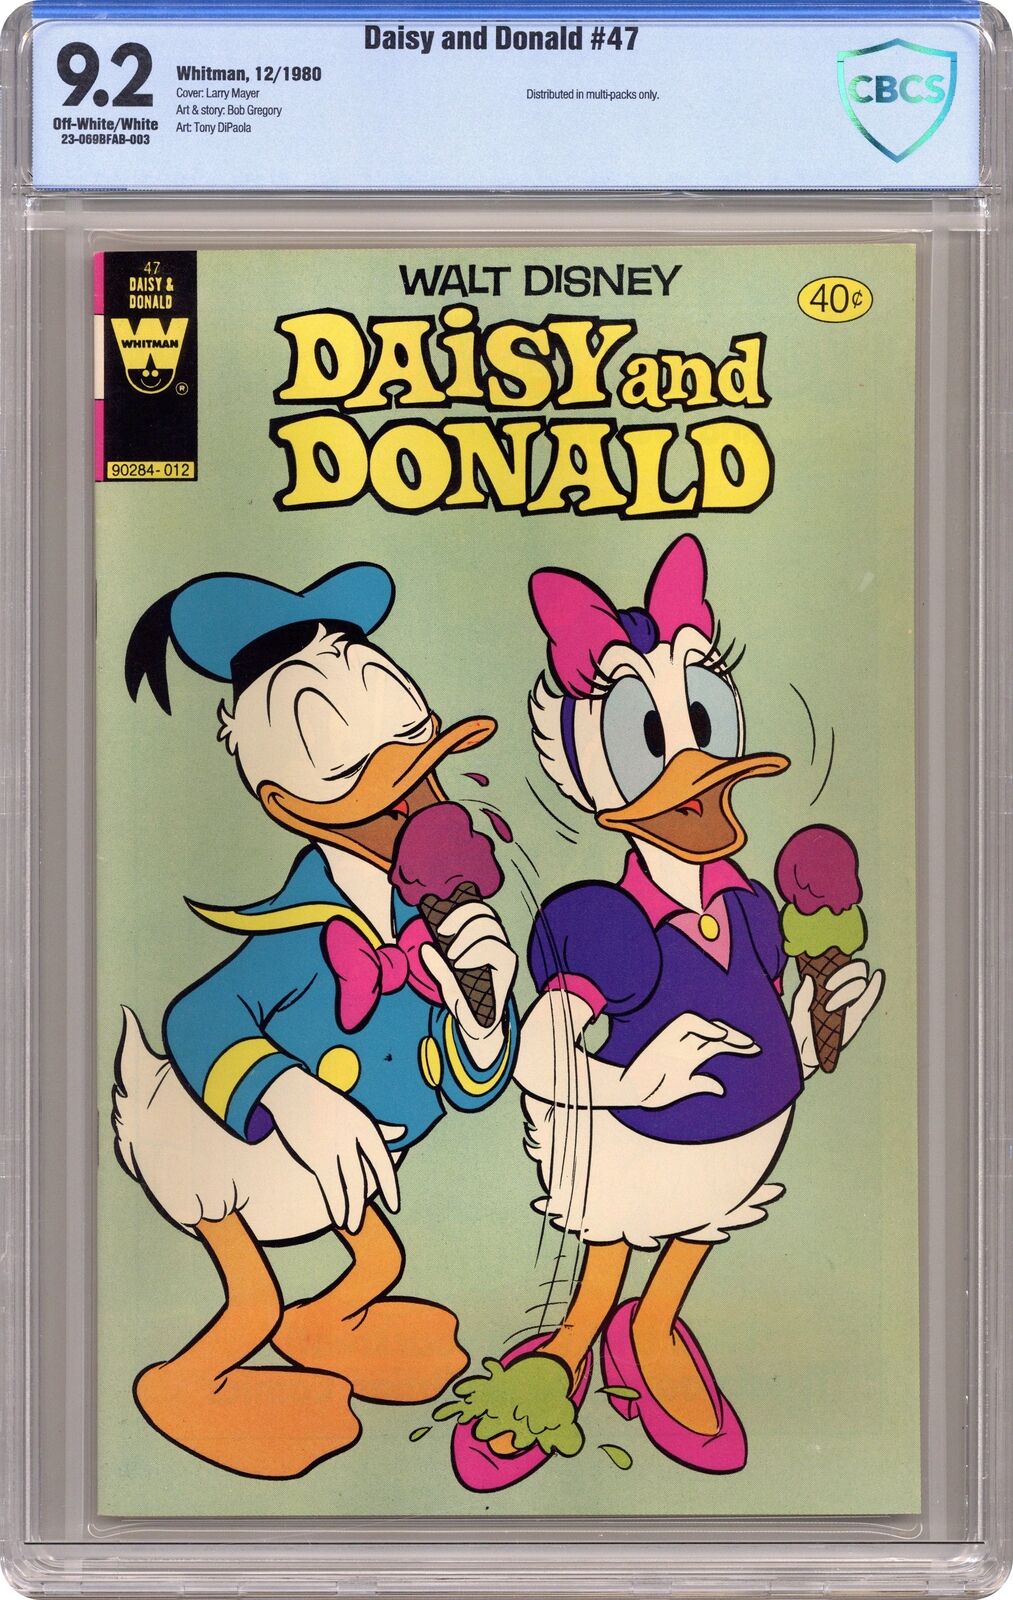 Daisy and Donald #47 CBCS 9.2 1980 23-069BFAB-003